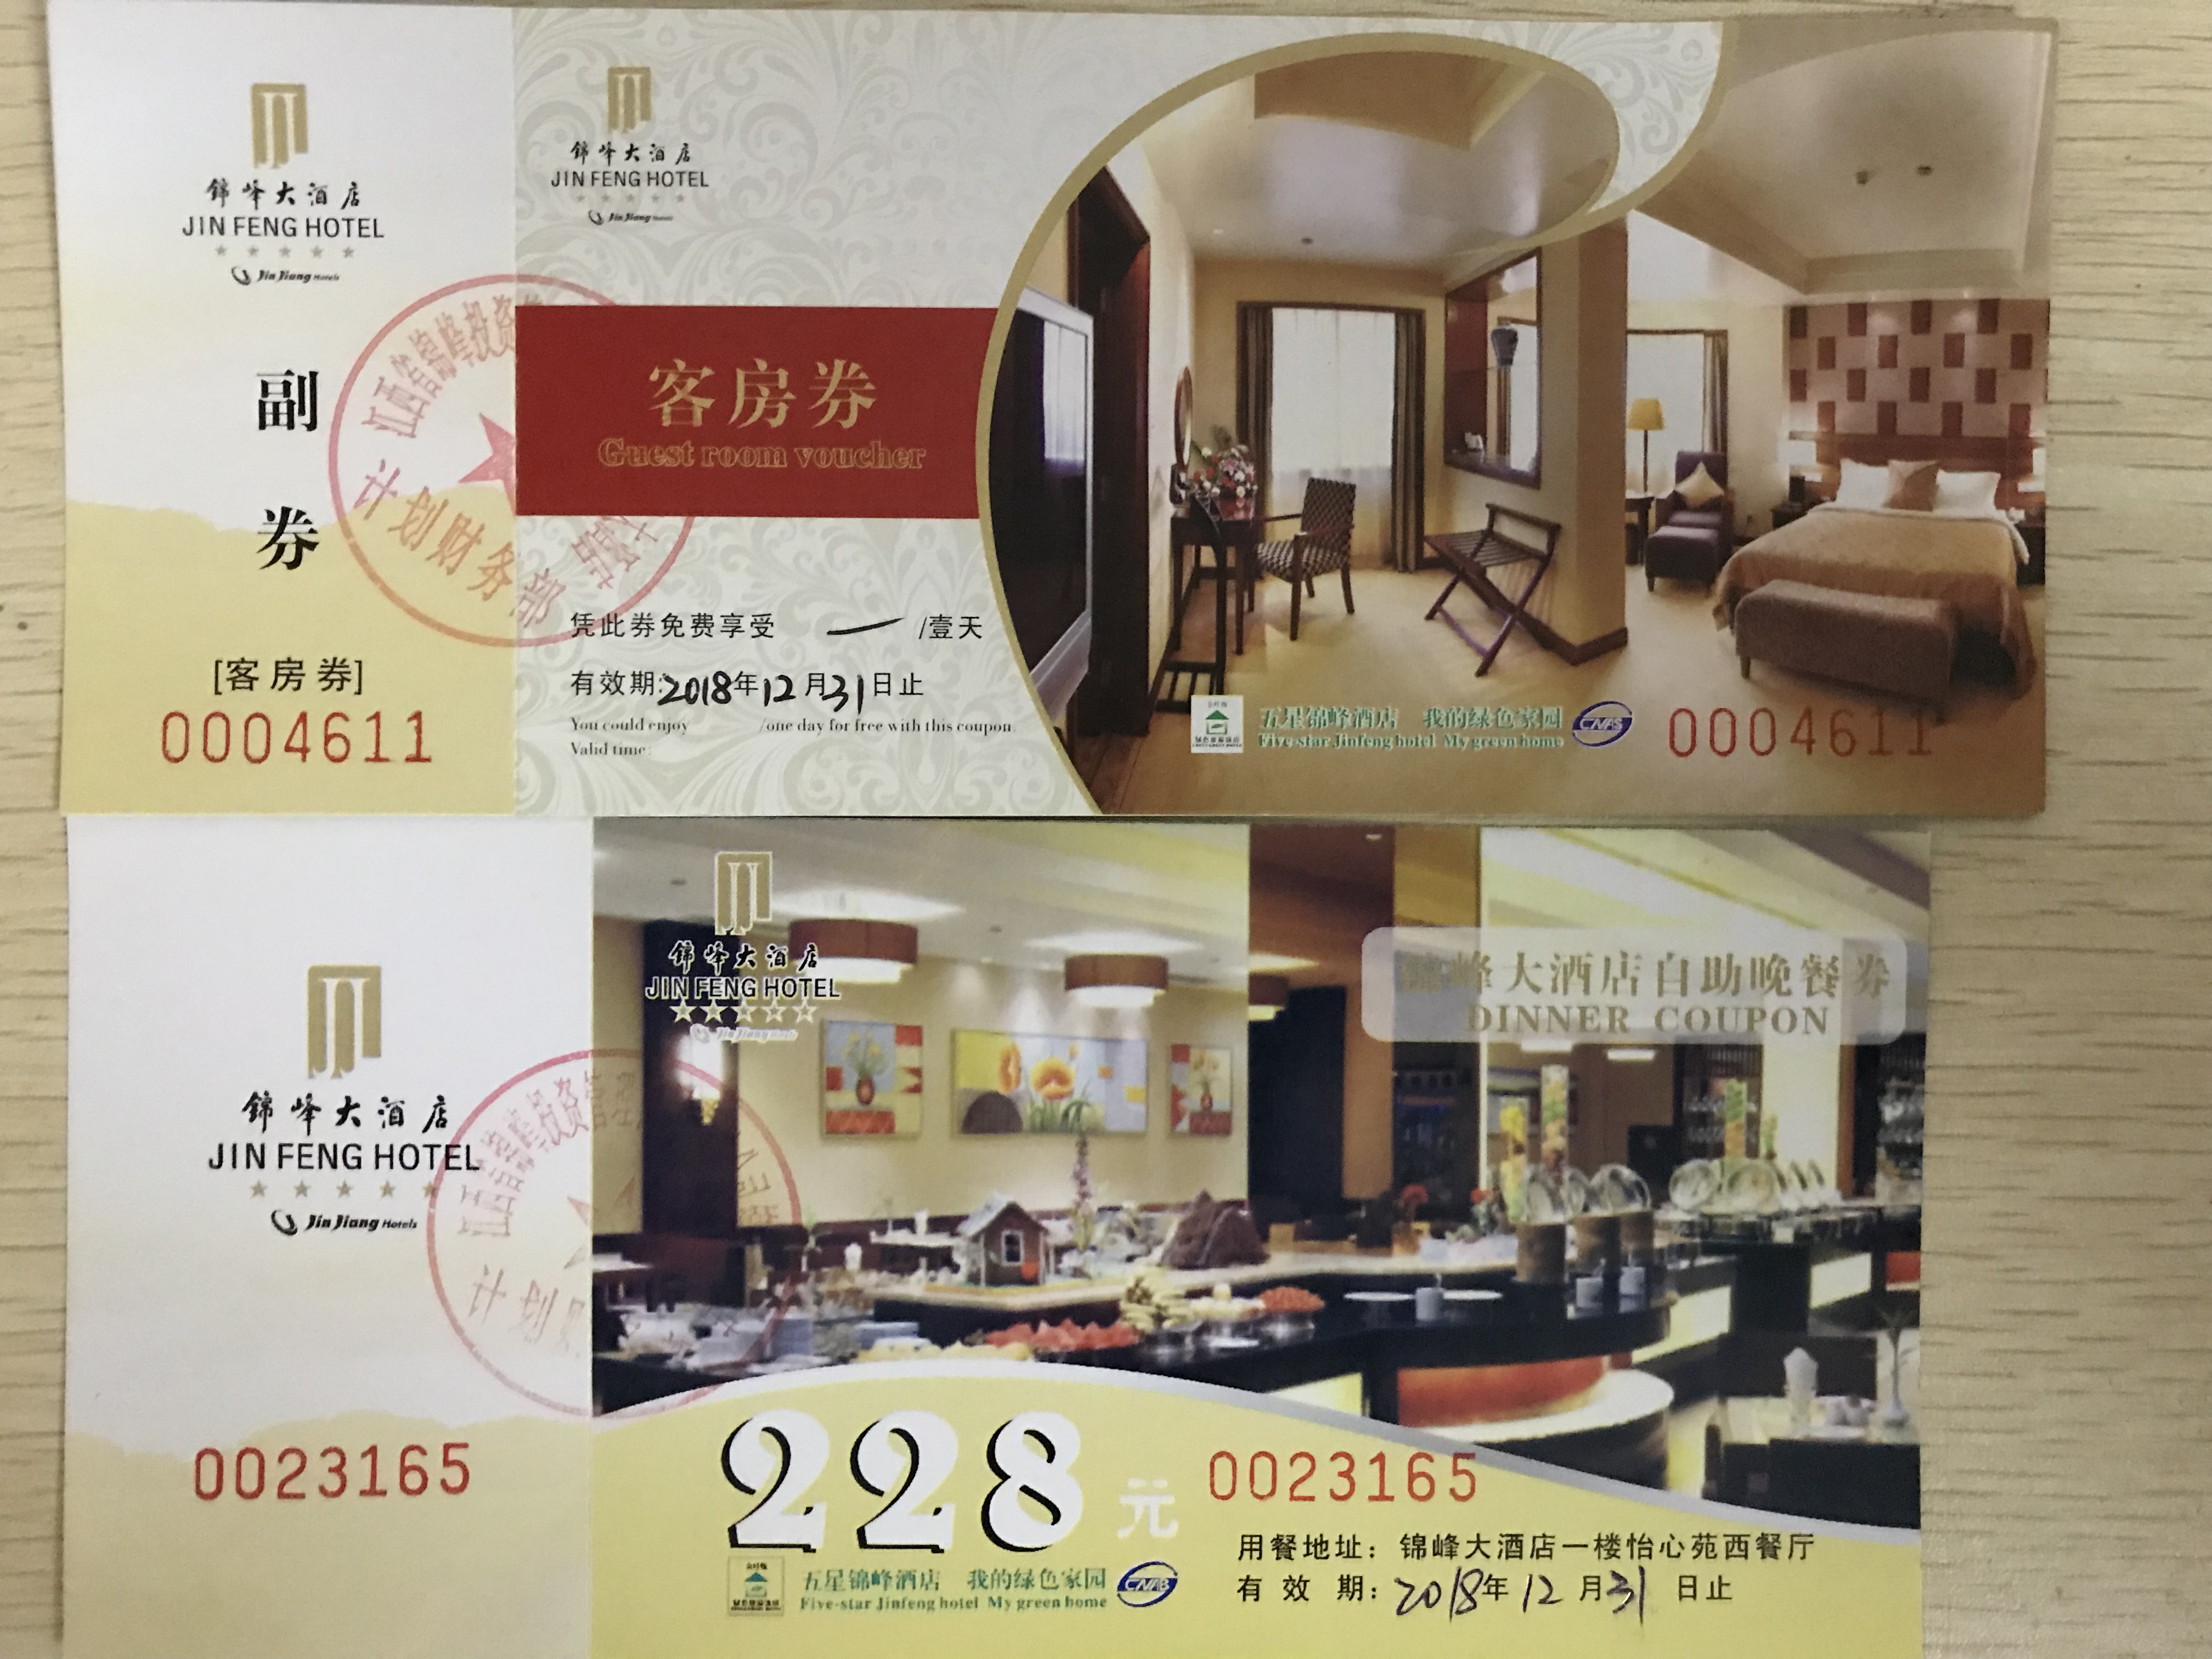 锦峰大酒店客房券和价值228元的晚餐券_1